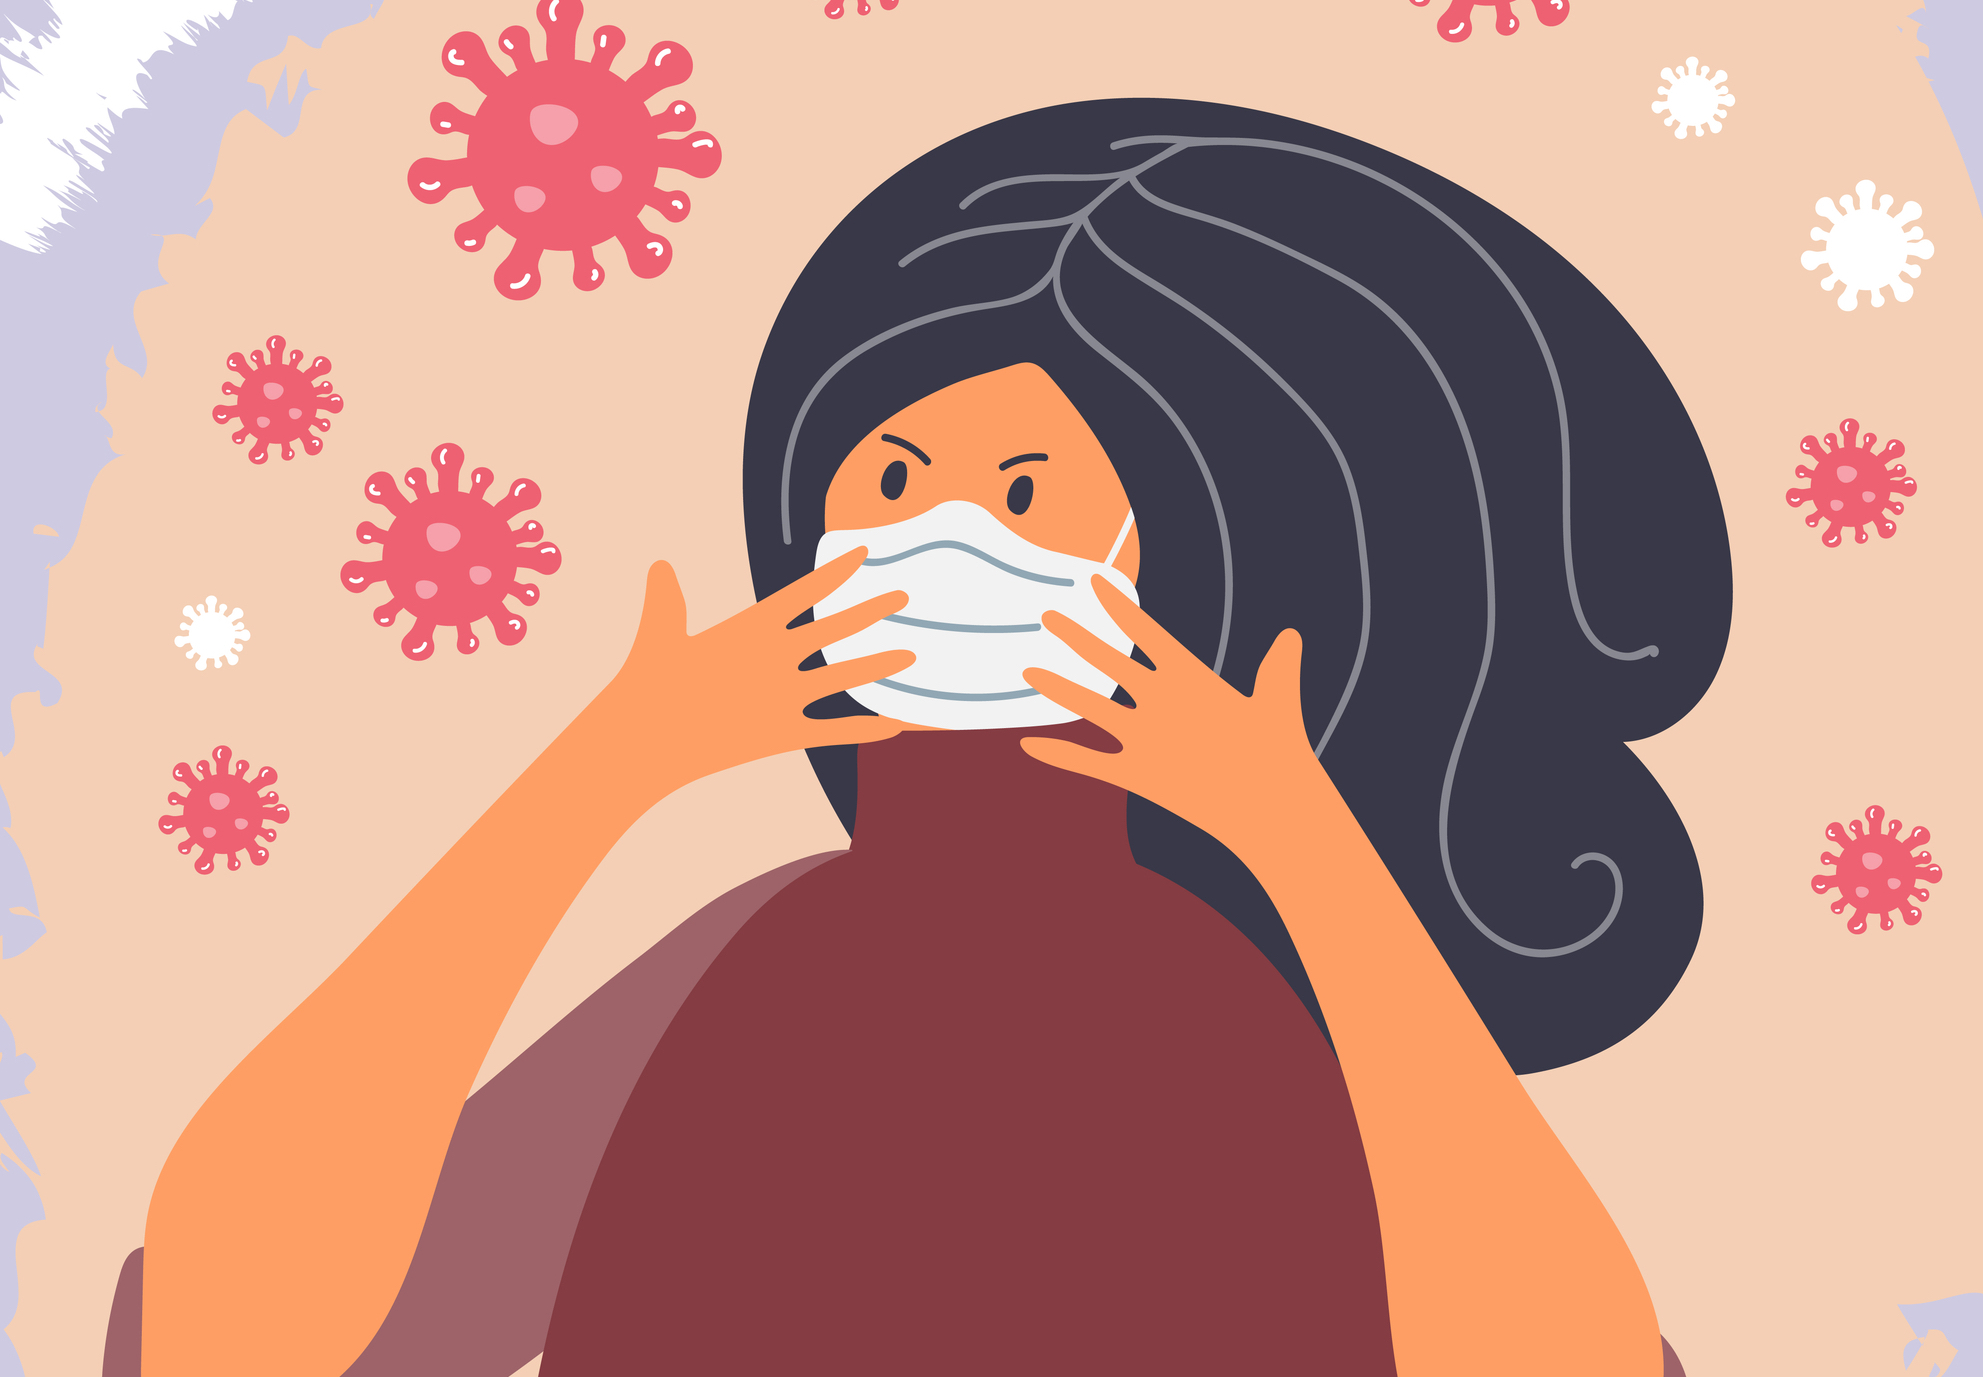 Выживете ли вы во время пандемии коронавируса? Узнайте в нашем тесте по правилам безопасности